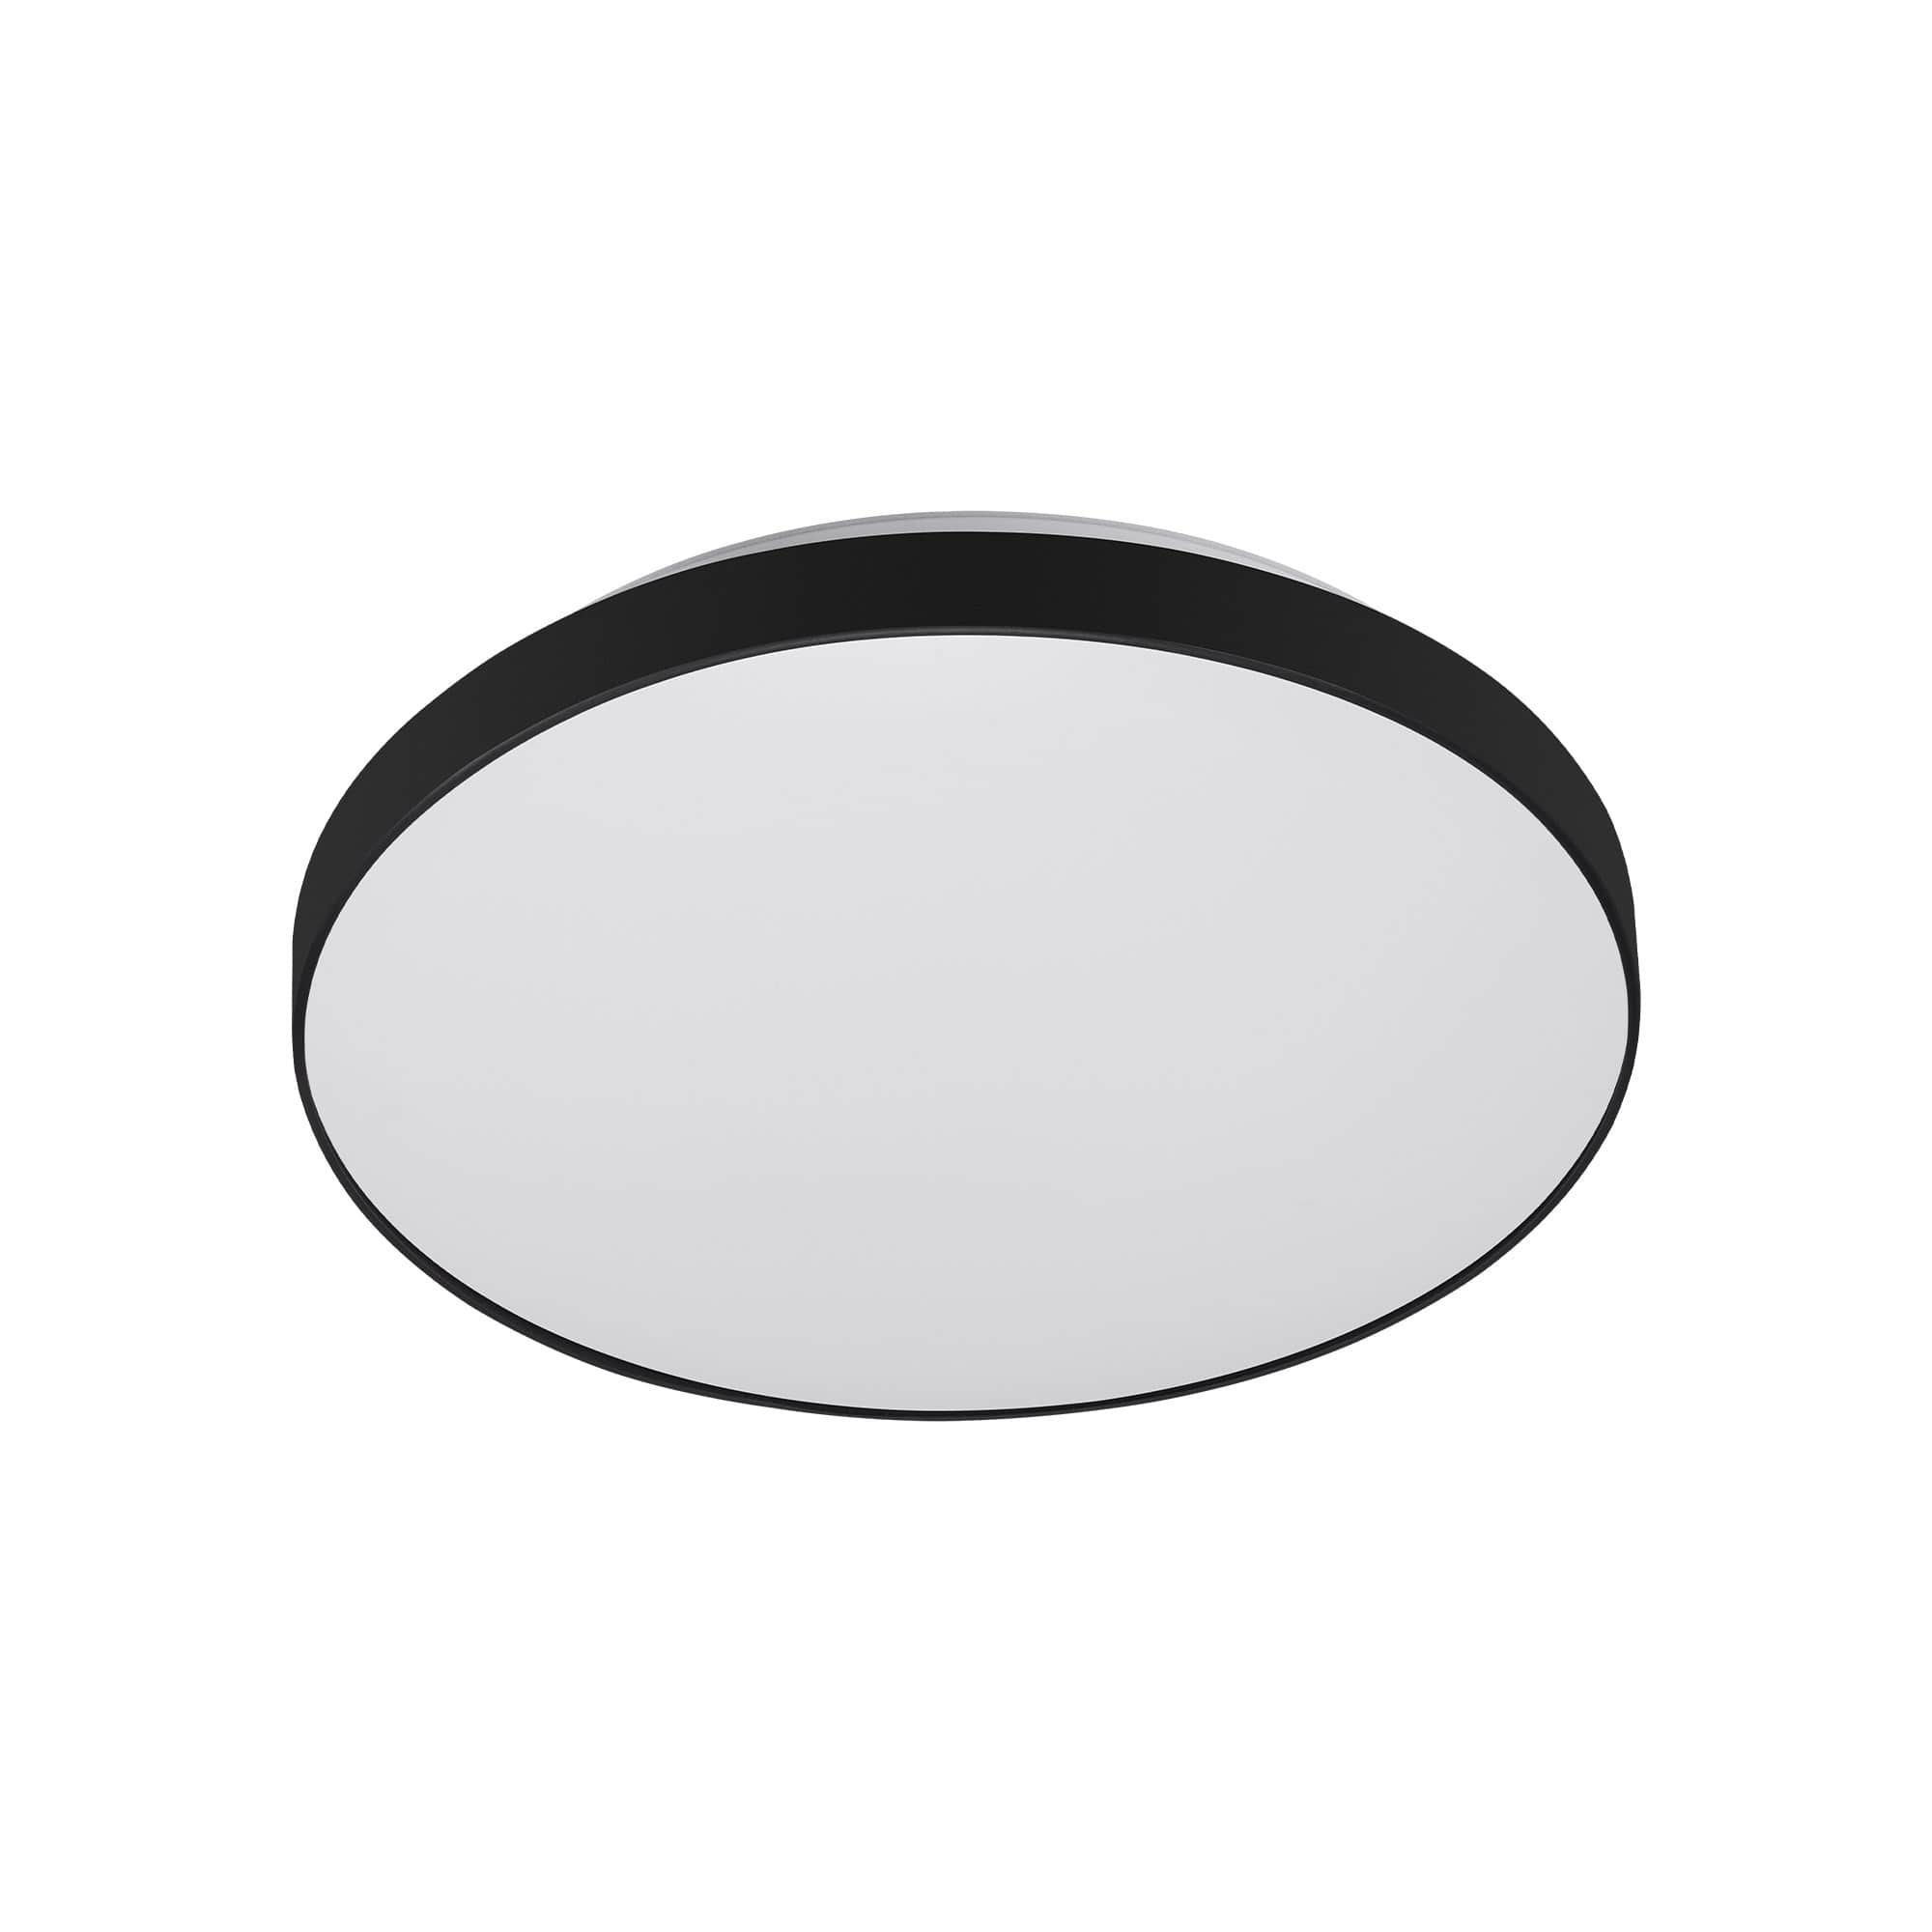 Telefunken sensor LED ceiling lamp, Ø 29 cm, 16 W, white-black